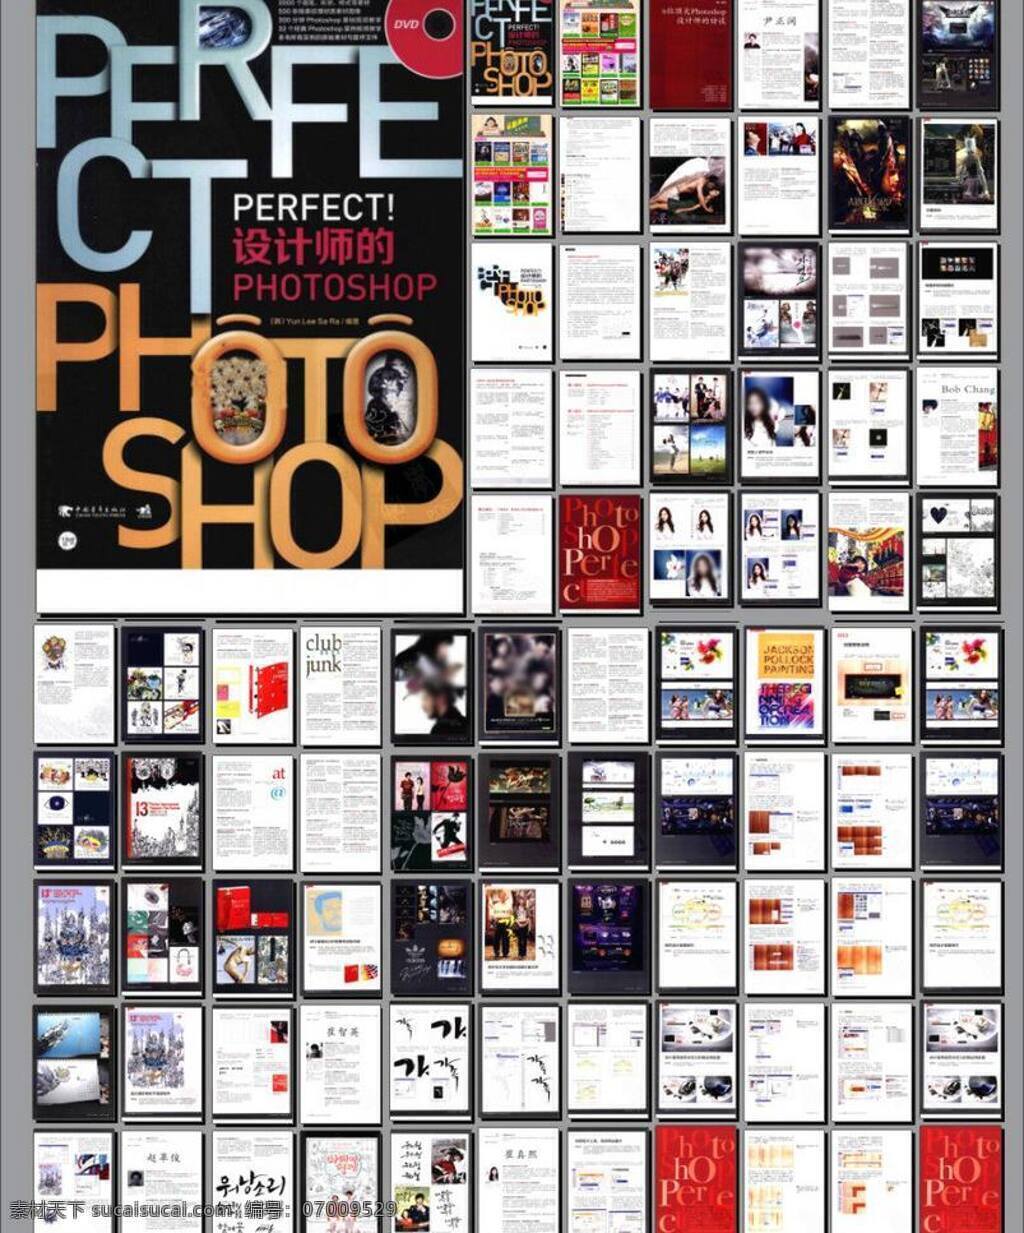 pdf photoshop ps ps创意设计 笔刷 插件 创意 创意设计 广告设计模板 画册 完美 模板下载 杂志 滤镜 平面设计 ps教程 平面设计教程 教程 画册设计 源文件 其他画册整套